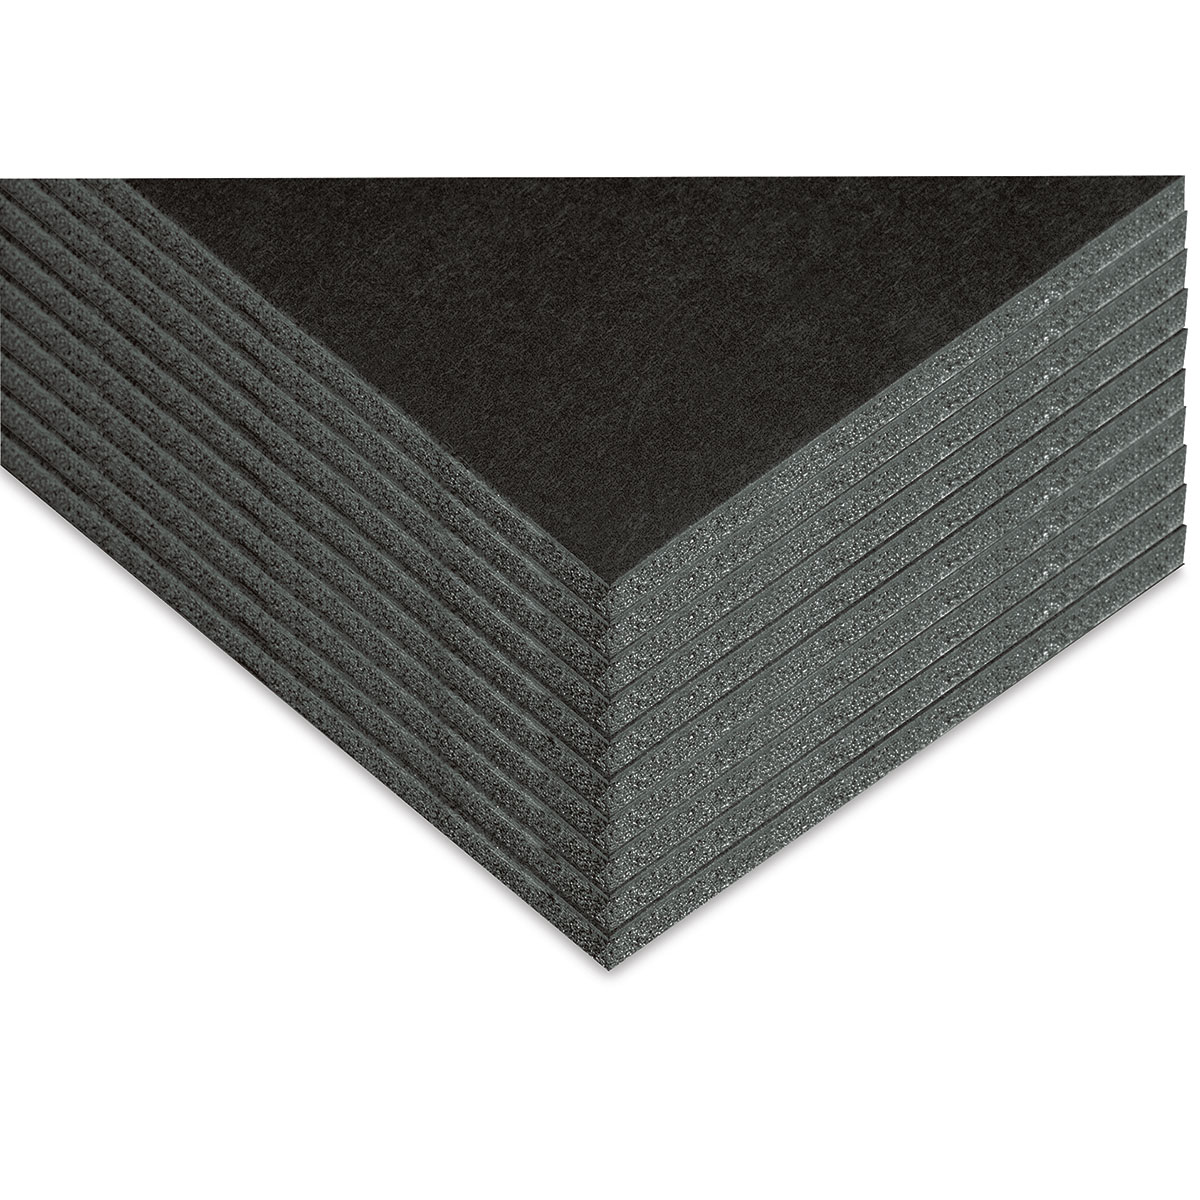 Foam Core Board - 36 x 48, Black, 3/16 Thick - ULINE - Carton of 25 - S-19381